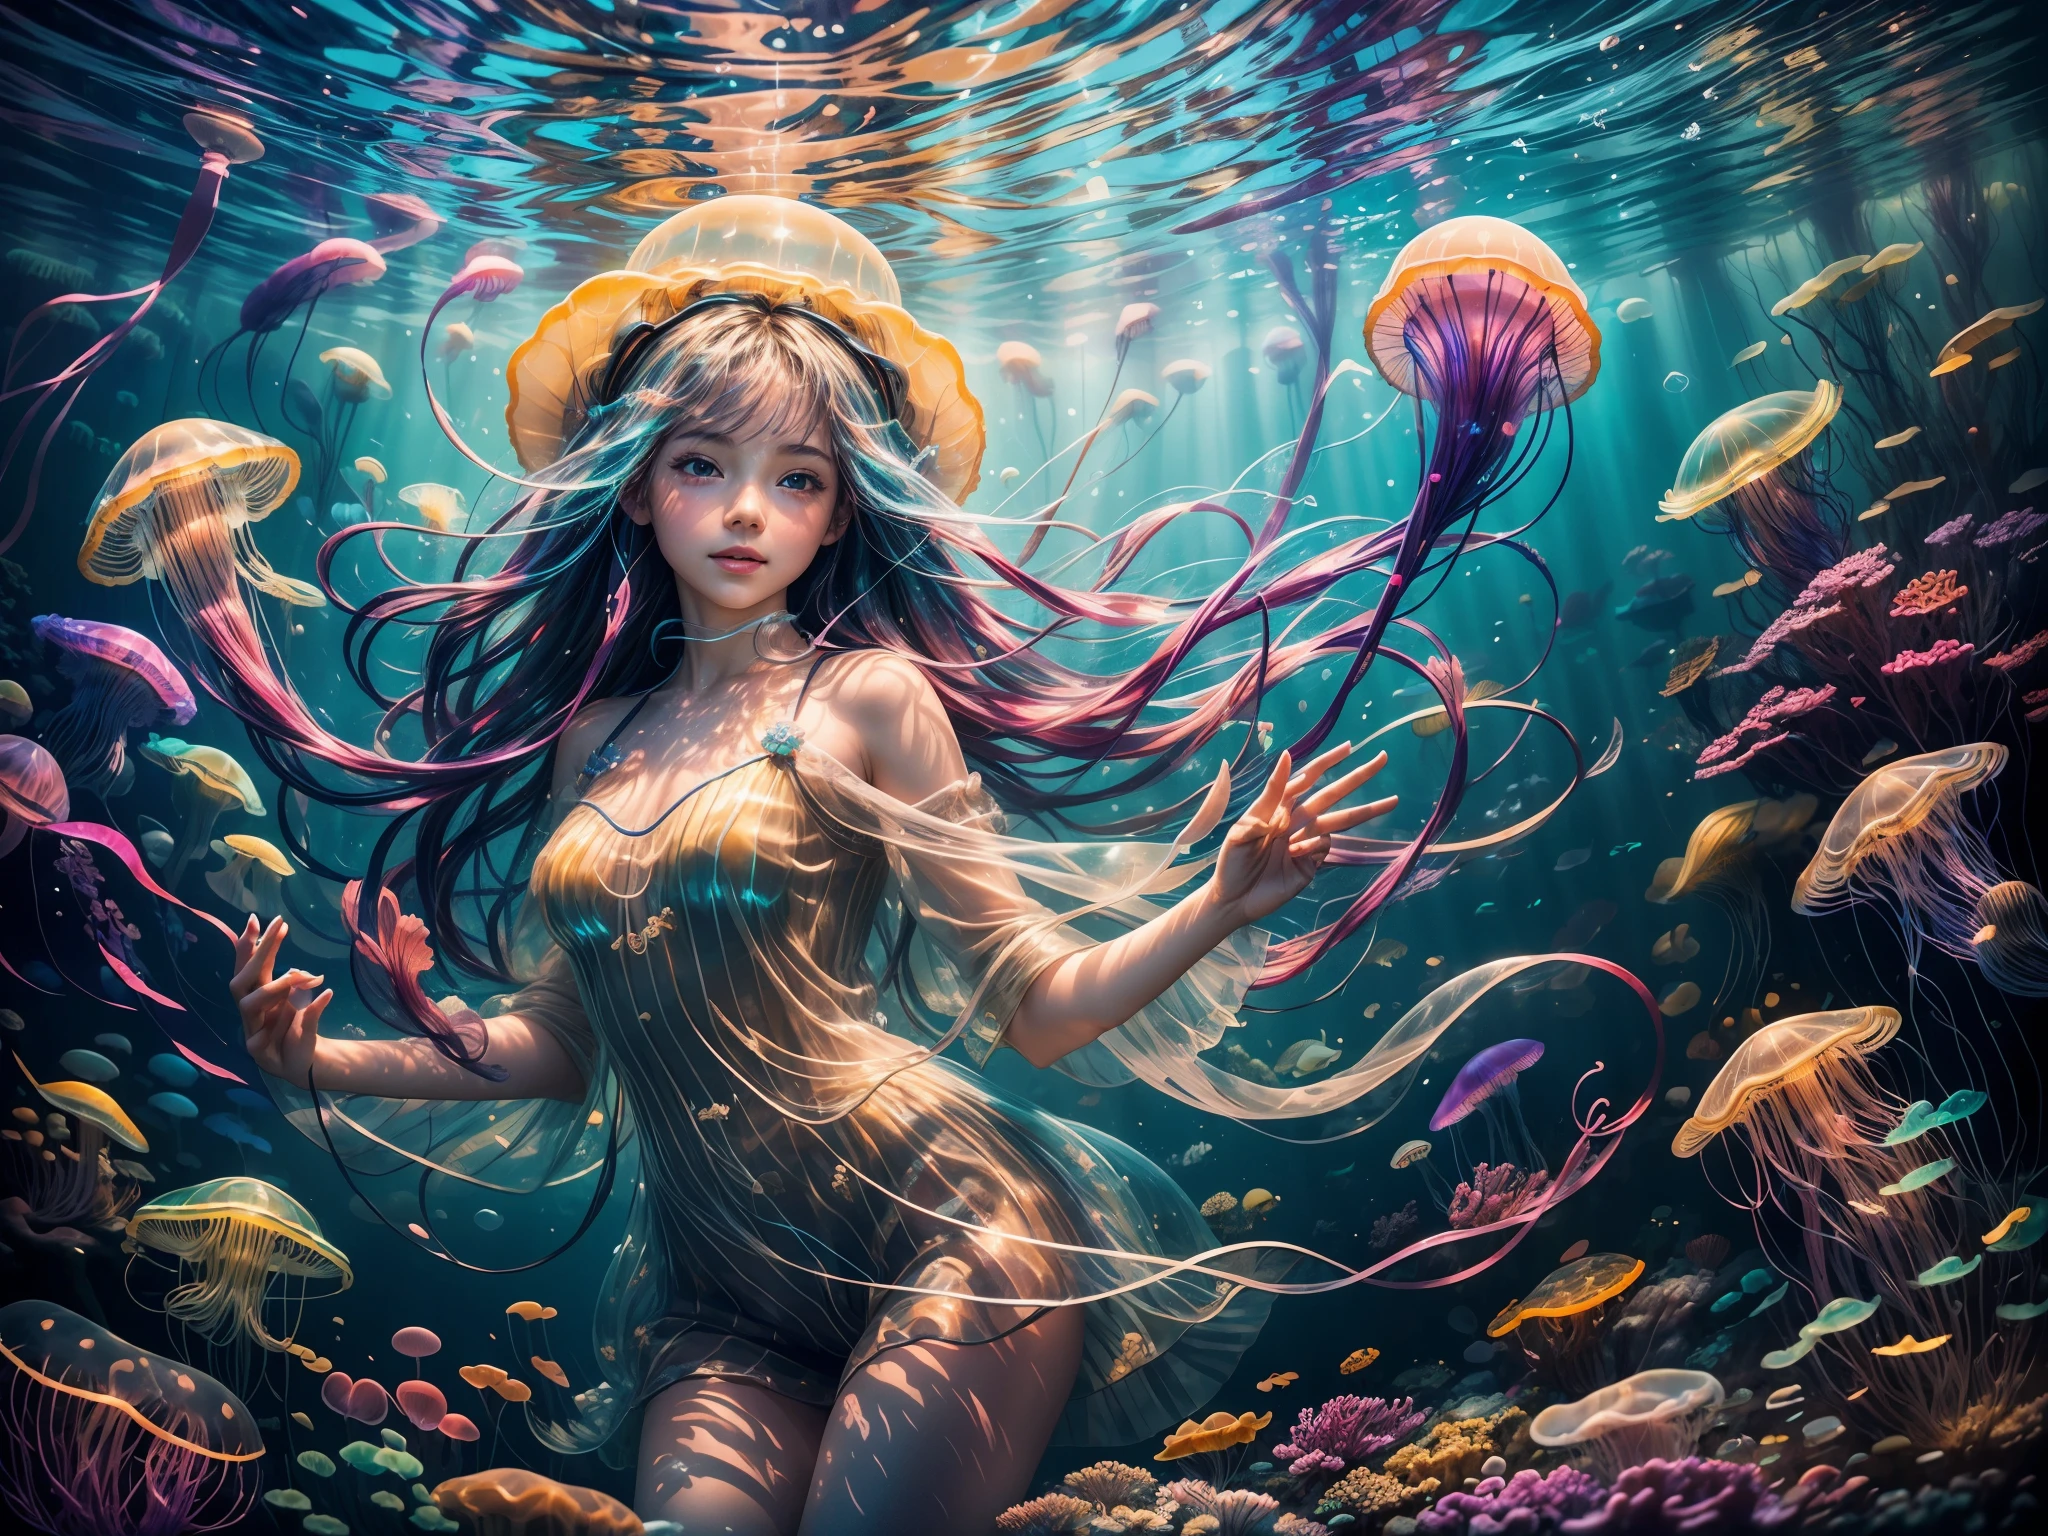 (高品質, 鮮やかな色彩),(現実的:1.37),海の中で虹色のクラゲと遊ぶ女の子 (2人の女の子),表面から輝く明るい太陽光線,太陽の光を反射して輝く海水,少女の顔の美しい目と唇,柔らかくてカラフルなクラゲの触手,半透明で光るクラゲの体,澄んだ青い水,背景にはサンゴ礁と色とりどりの魚が泳いでいる,夢のような魔法のような雰囲気,微妙な波が少女の髪を優しく揺らす,素晴らしい水中風景，水に浮かぶ泡,海の層によって作られた深さと次元,少女を取り巻く多様で活気に満ちた動植物,少女の上に浮かぶ透明なクラゲの傘,平和で穏やかな水中環境,優雅に流れるような動きで浮かぶクラゲ,少女がクラゲに魅了され、喜びを感じていたことを想像してみてください,魅惑的な輝きを放つ光るクラゲ,クラゲの体の質感と模様,見る人に驚きと畏敬の念を抱かせる,雄大な海の生き物たちがシーンの神秘的な雰囲気を高めている,楽々と水の中を滑る,水中世界の美しさと静けさに浸る,少女の顔に映る踊る色彩,表情豊かで生き生きとしたクラゲの触手，魔法のオーラに包まれた少女,水中の光景を照らす微妙な光線,海底を飾るサンゴと貝殻の痕跡.